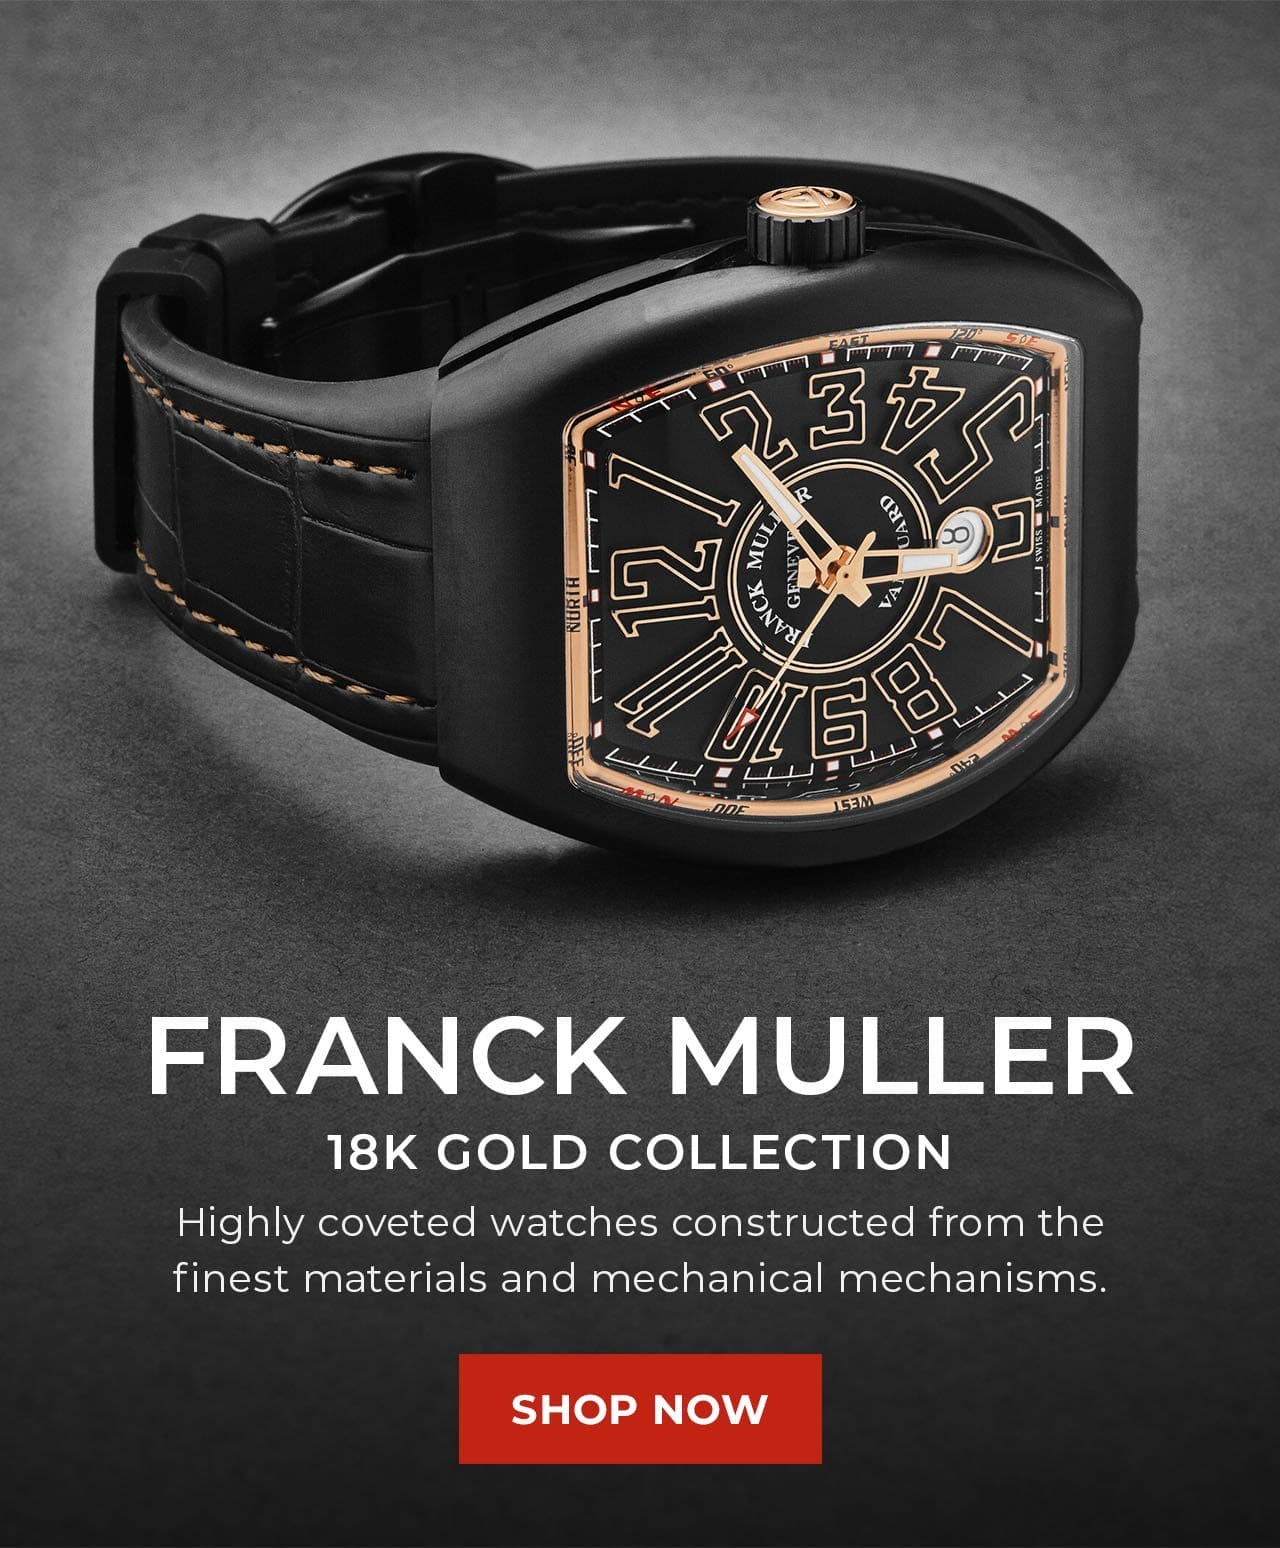 Franck Muller 18K Gold Collection | SHOP NOW